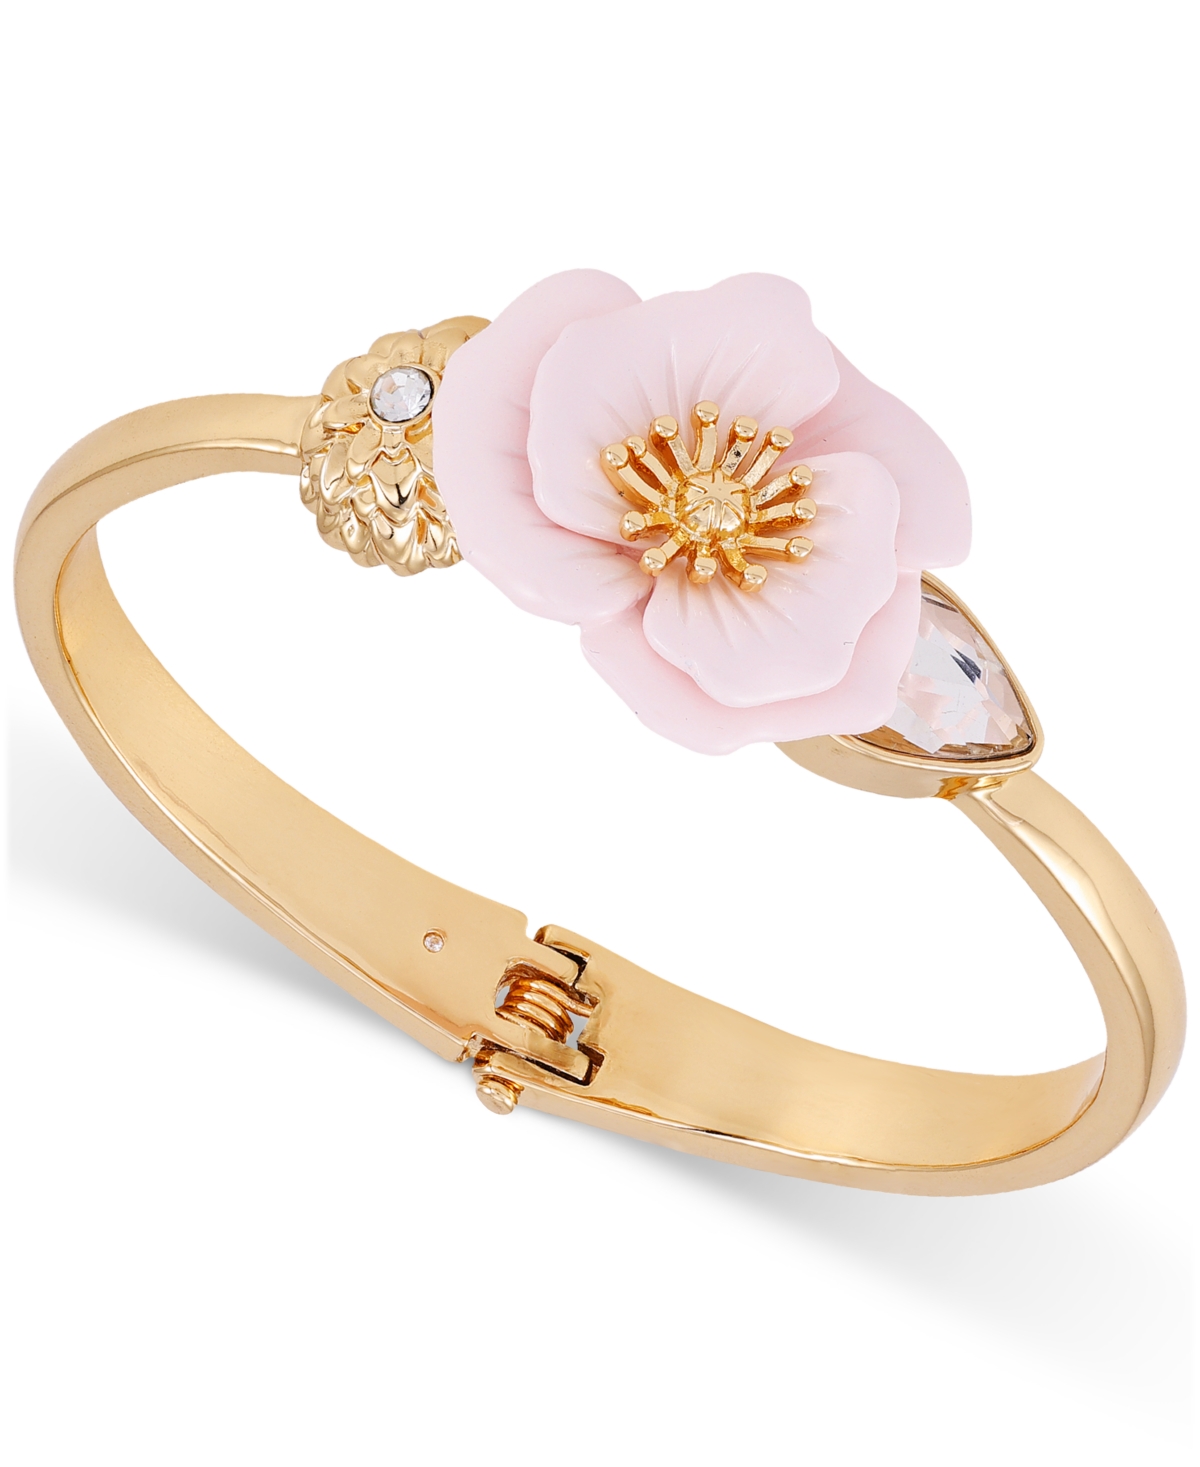 Guess Gold-tone Crystal & Pink Flower Bangle Bracelet